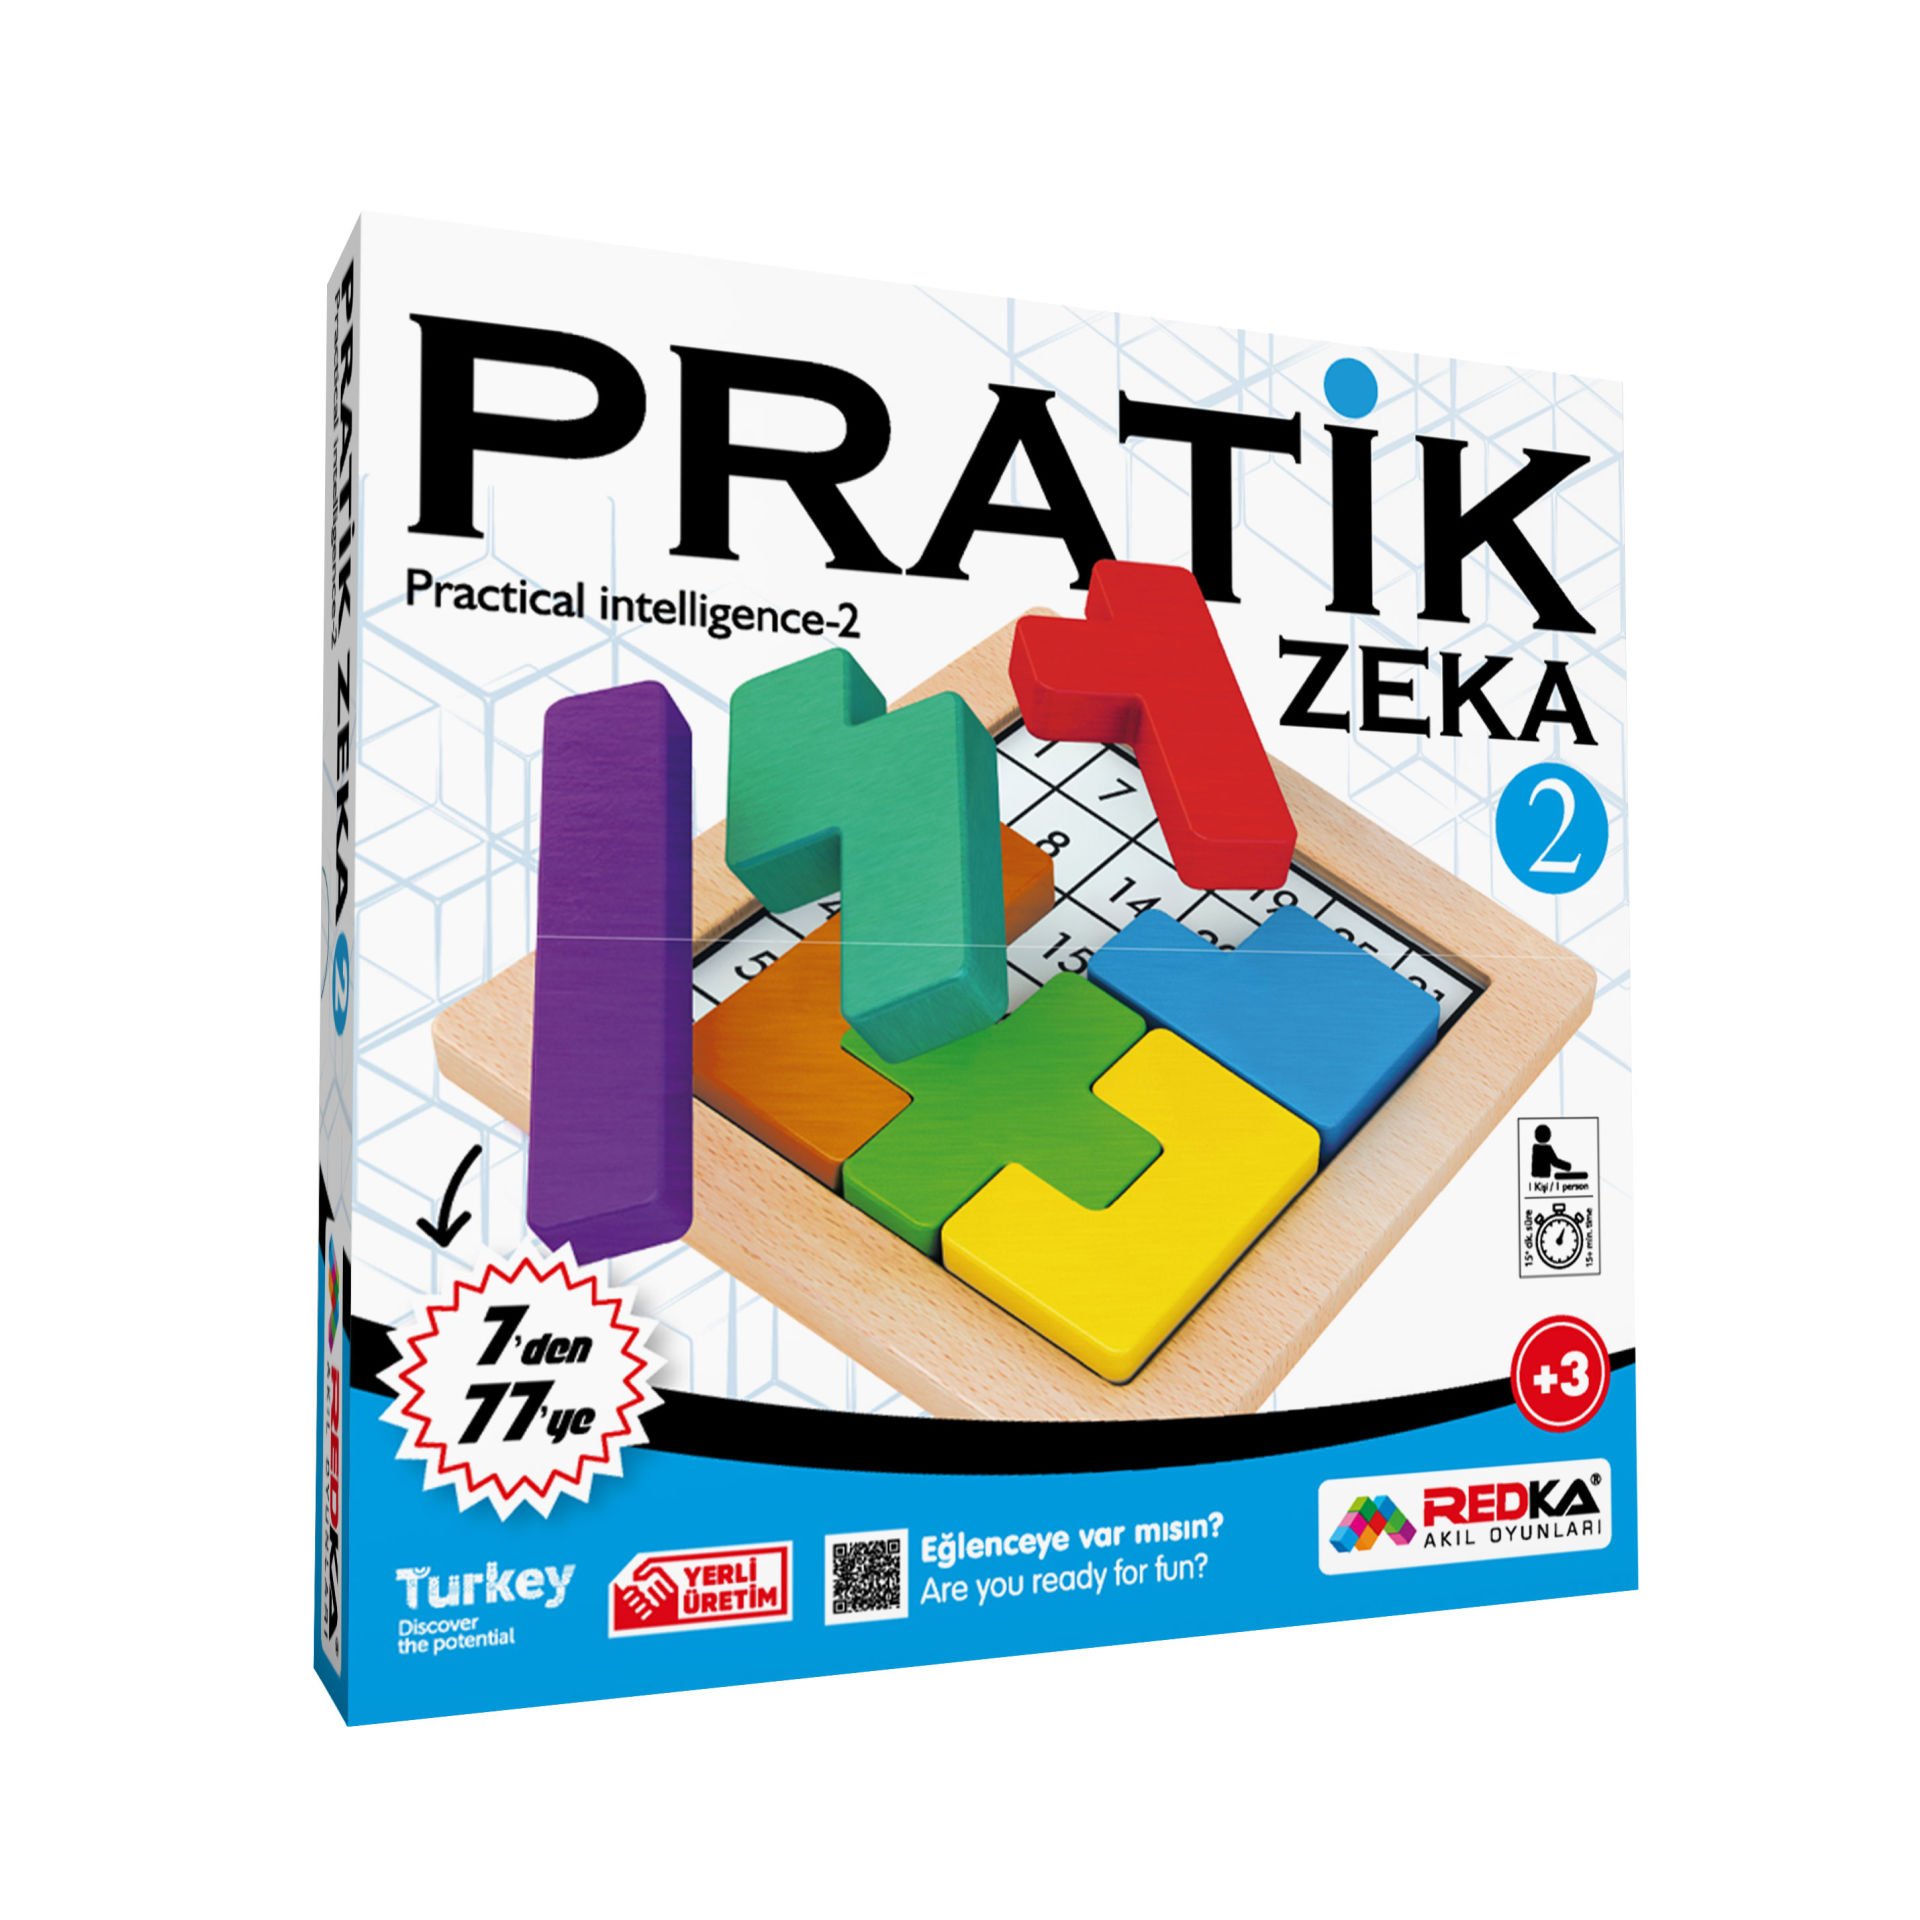 RED-5136 PRATIK ZEKA 2  24